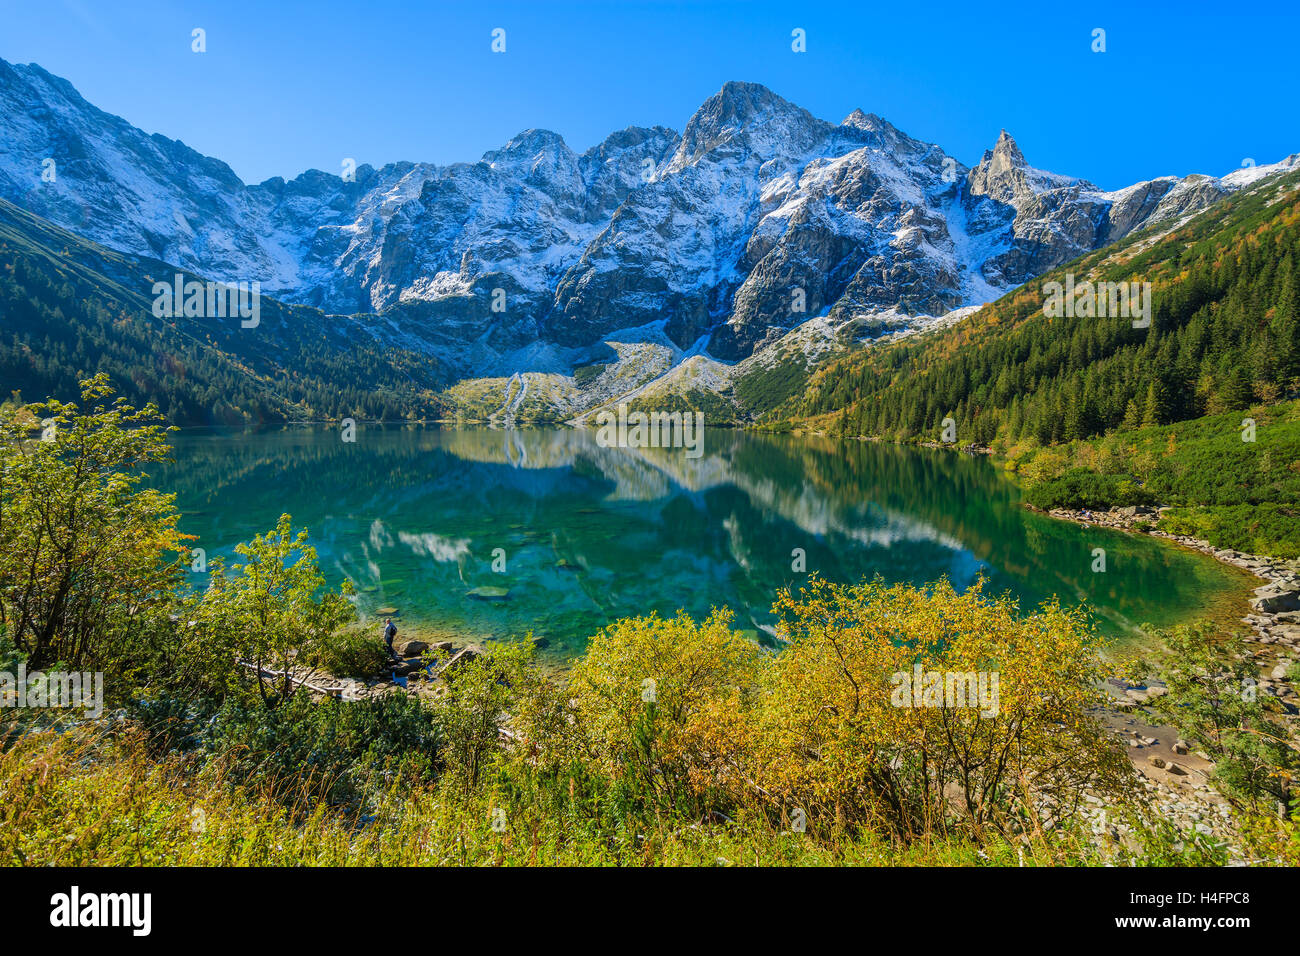 Le lac Morskie Oko dans couleurs d'automne avec des pics couverts de neige, les Hautes Tatras, Pologne Banque D'Images